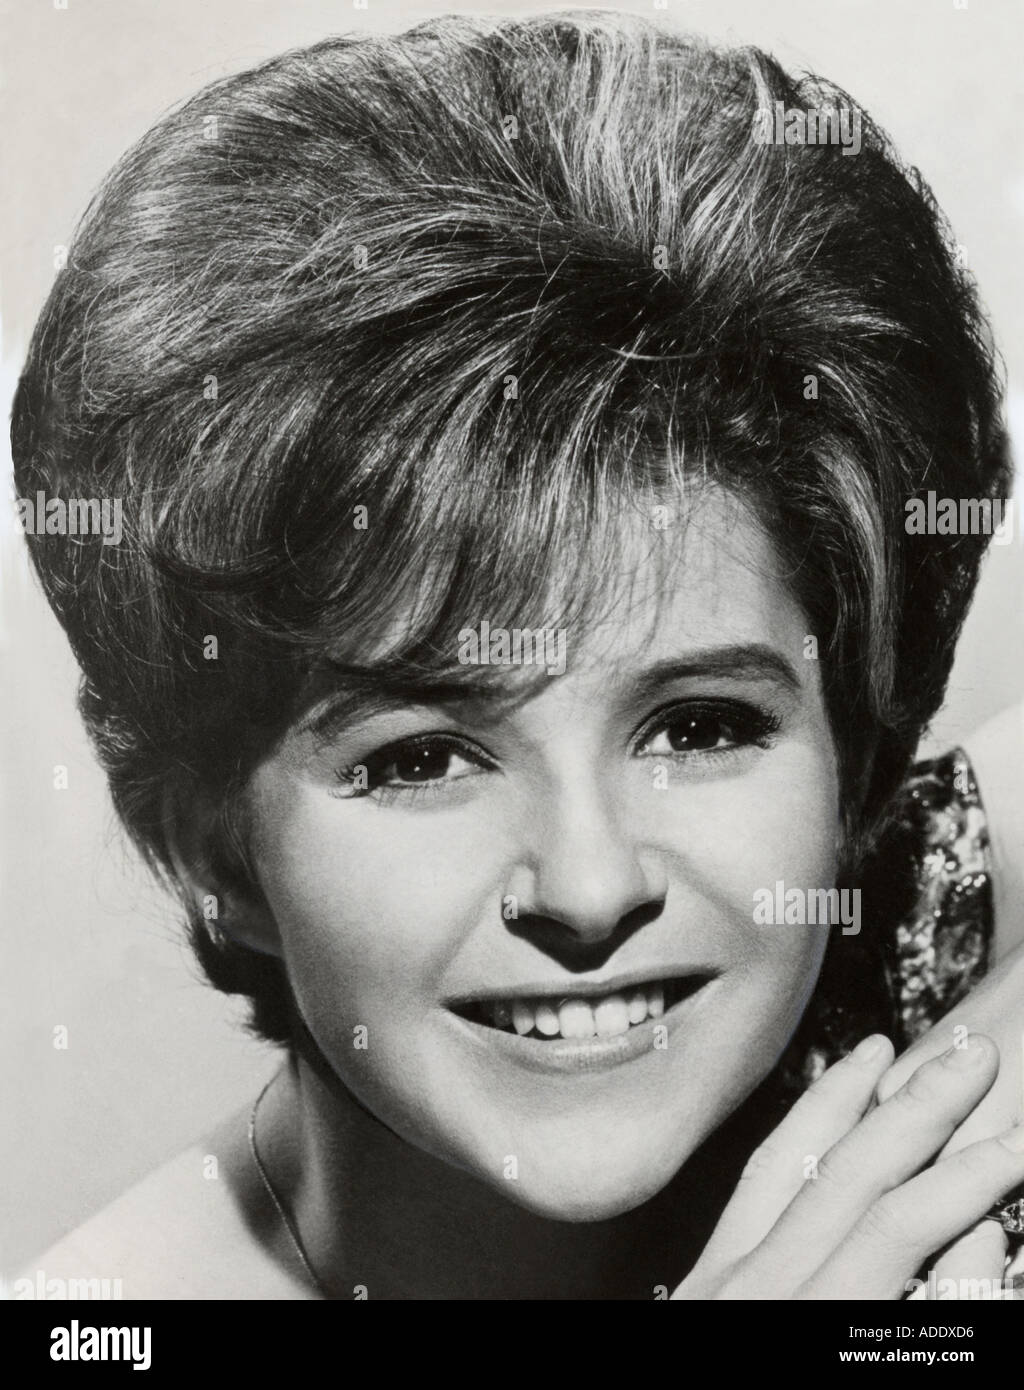 BRENDA LEE US singer here in 1960s Stock Photo - Alamy